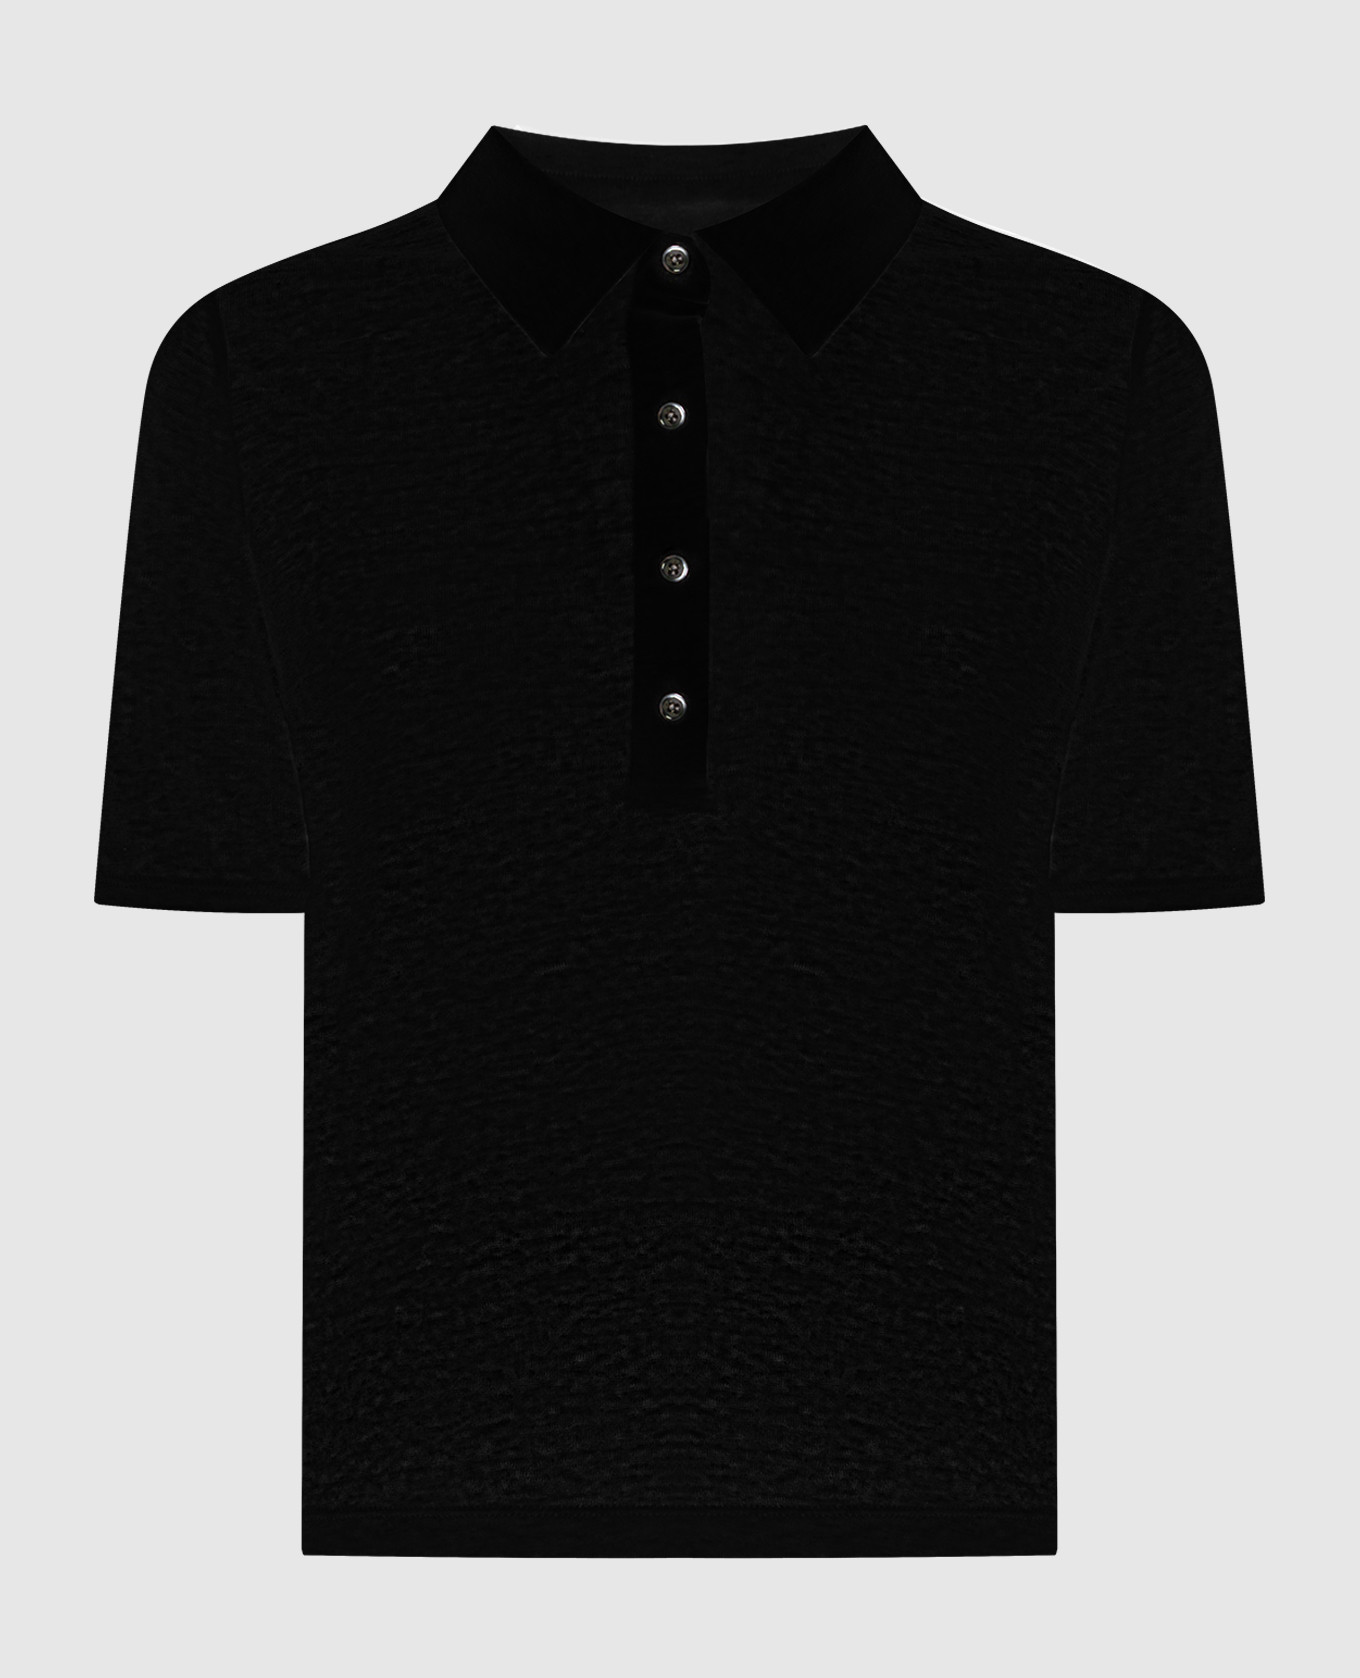 Black linen polo shirt